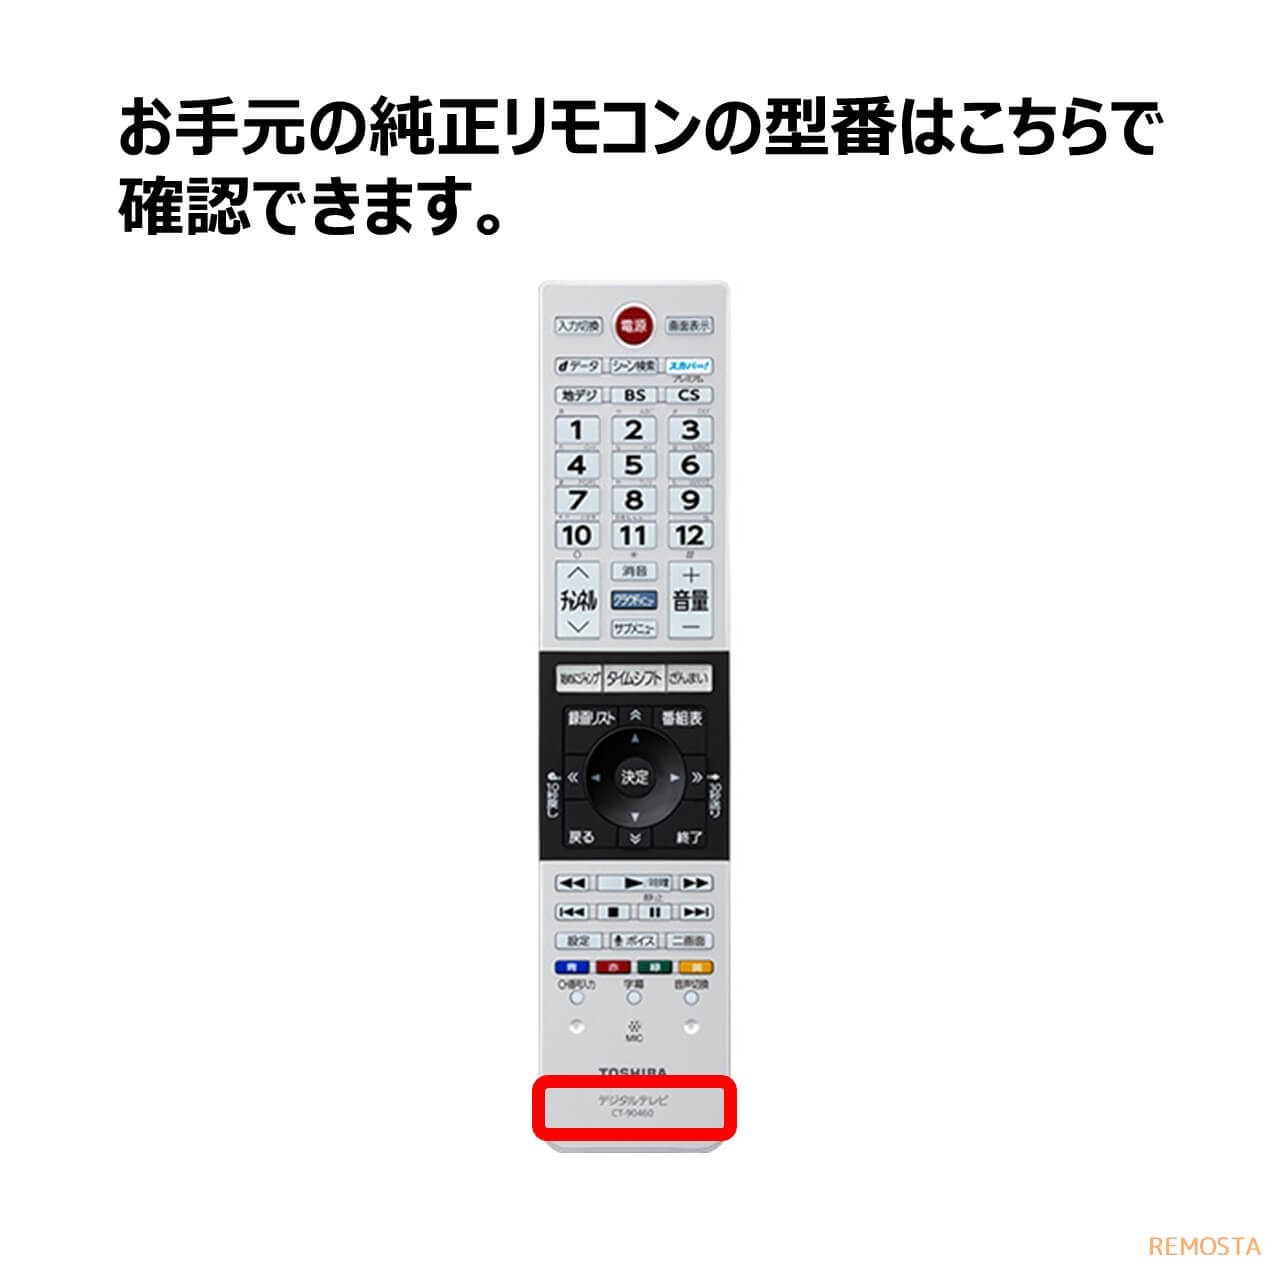 日本全国 送料無料 CT-90485 テレビ リモコン レグザ 東芝 75044478